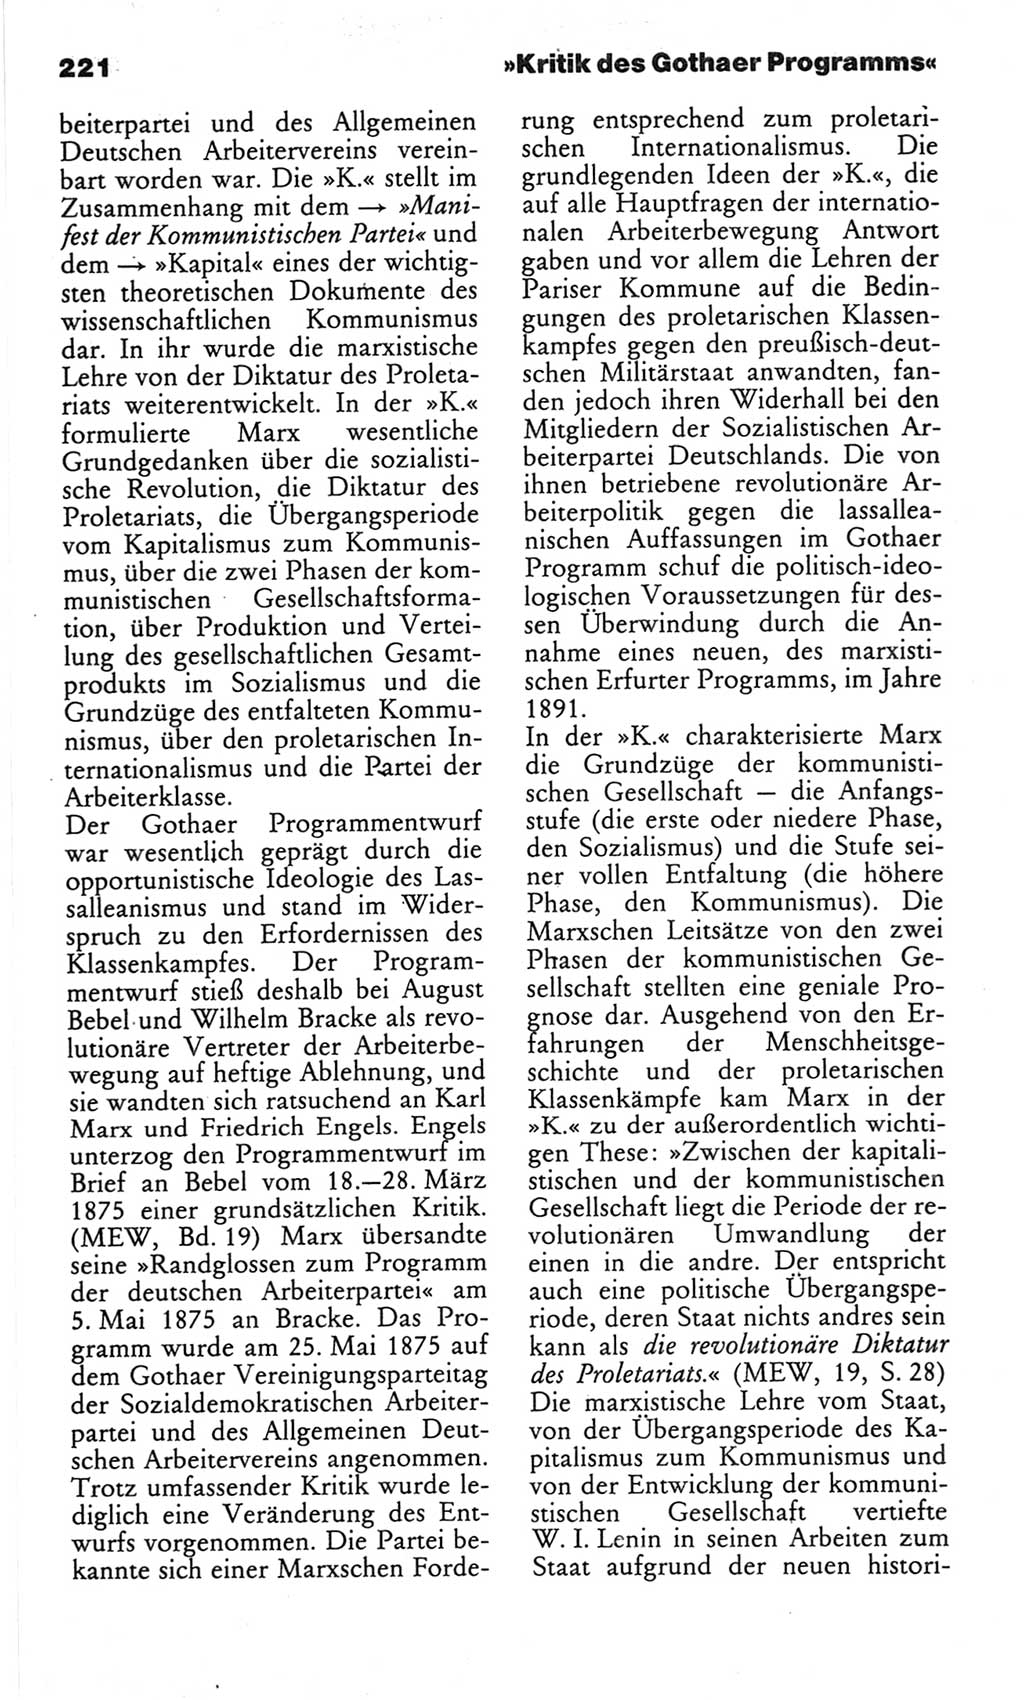 Wörterbuch des wissenschaftlichen Kommunismus [Deutsche Demokratische Republik (DDR)] 1982, Seite 221 (Wb. wiss. Komm. DDR 1982, S. 221)